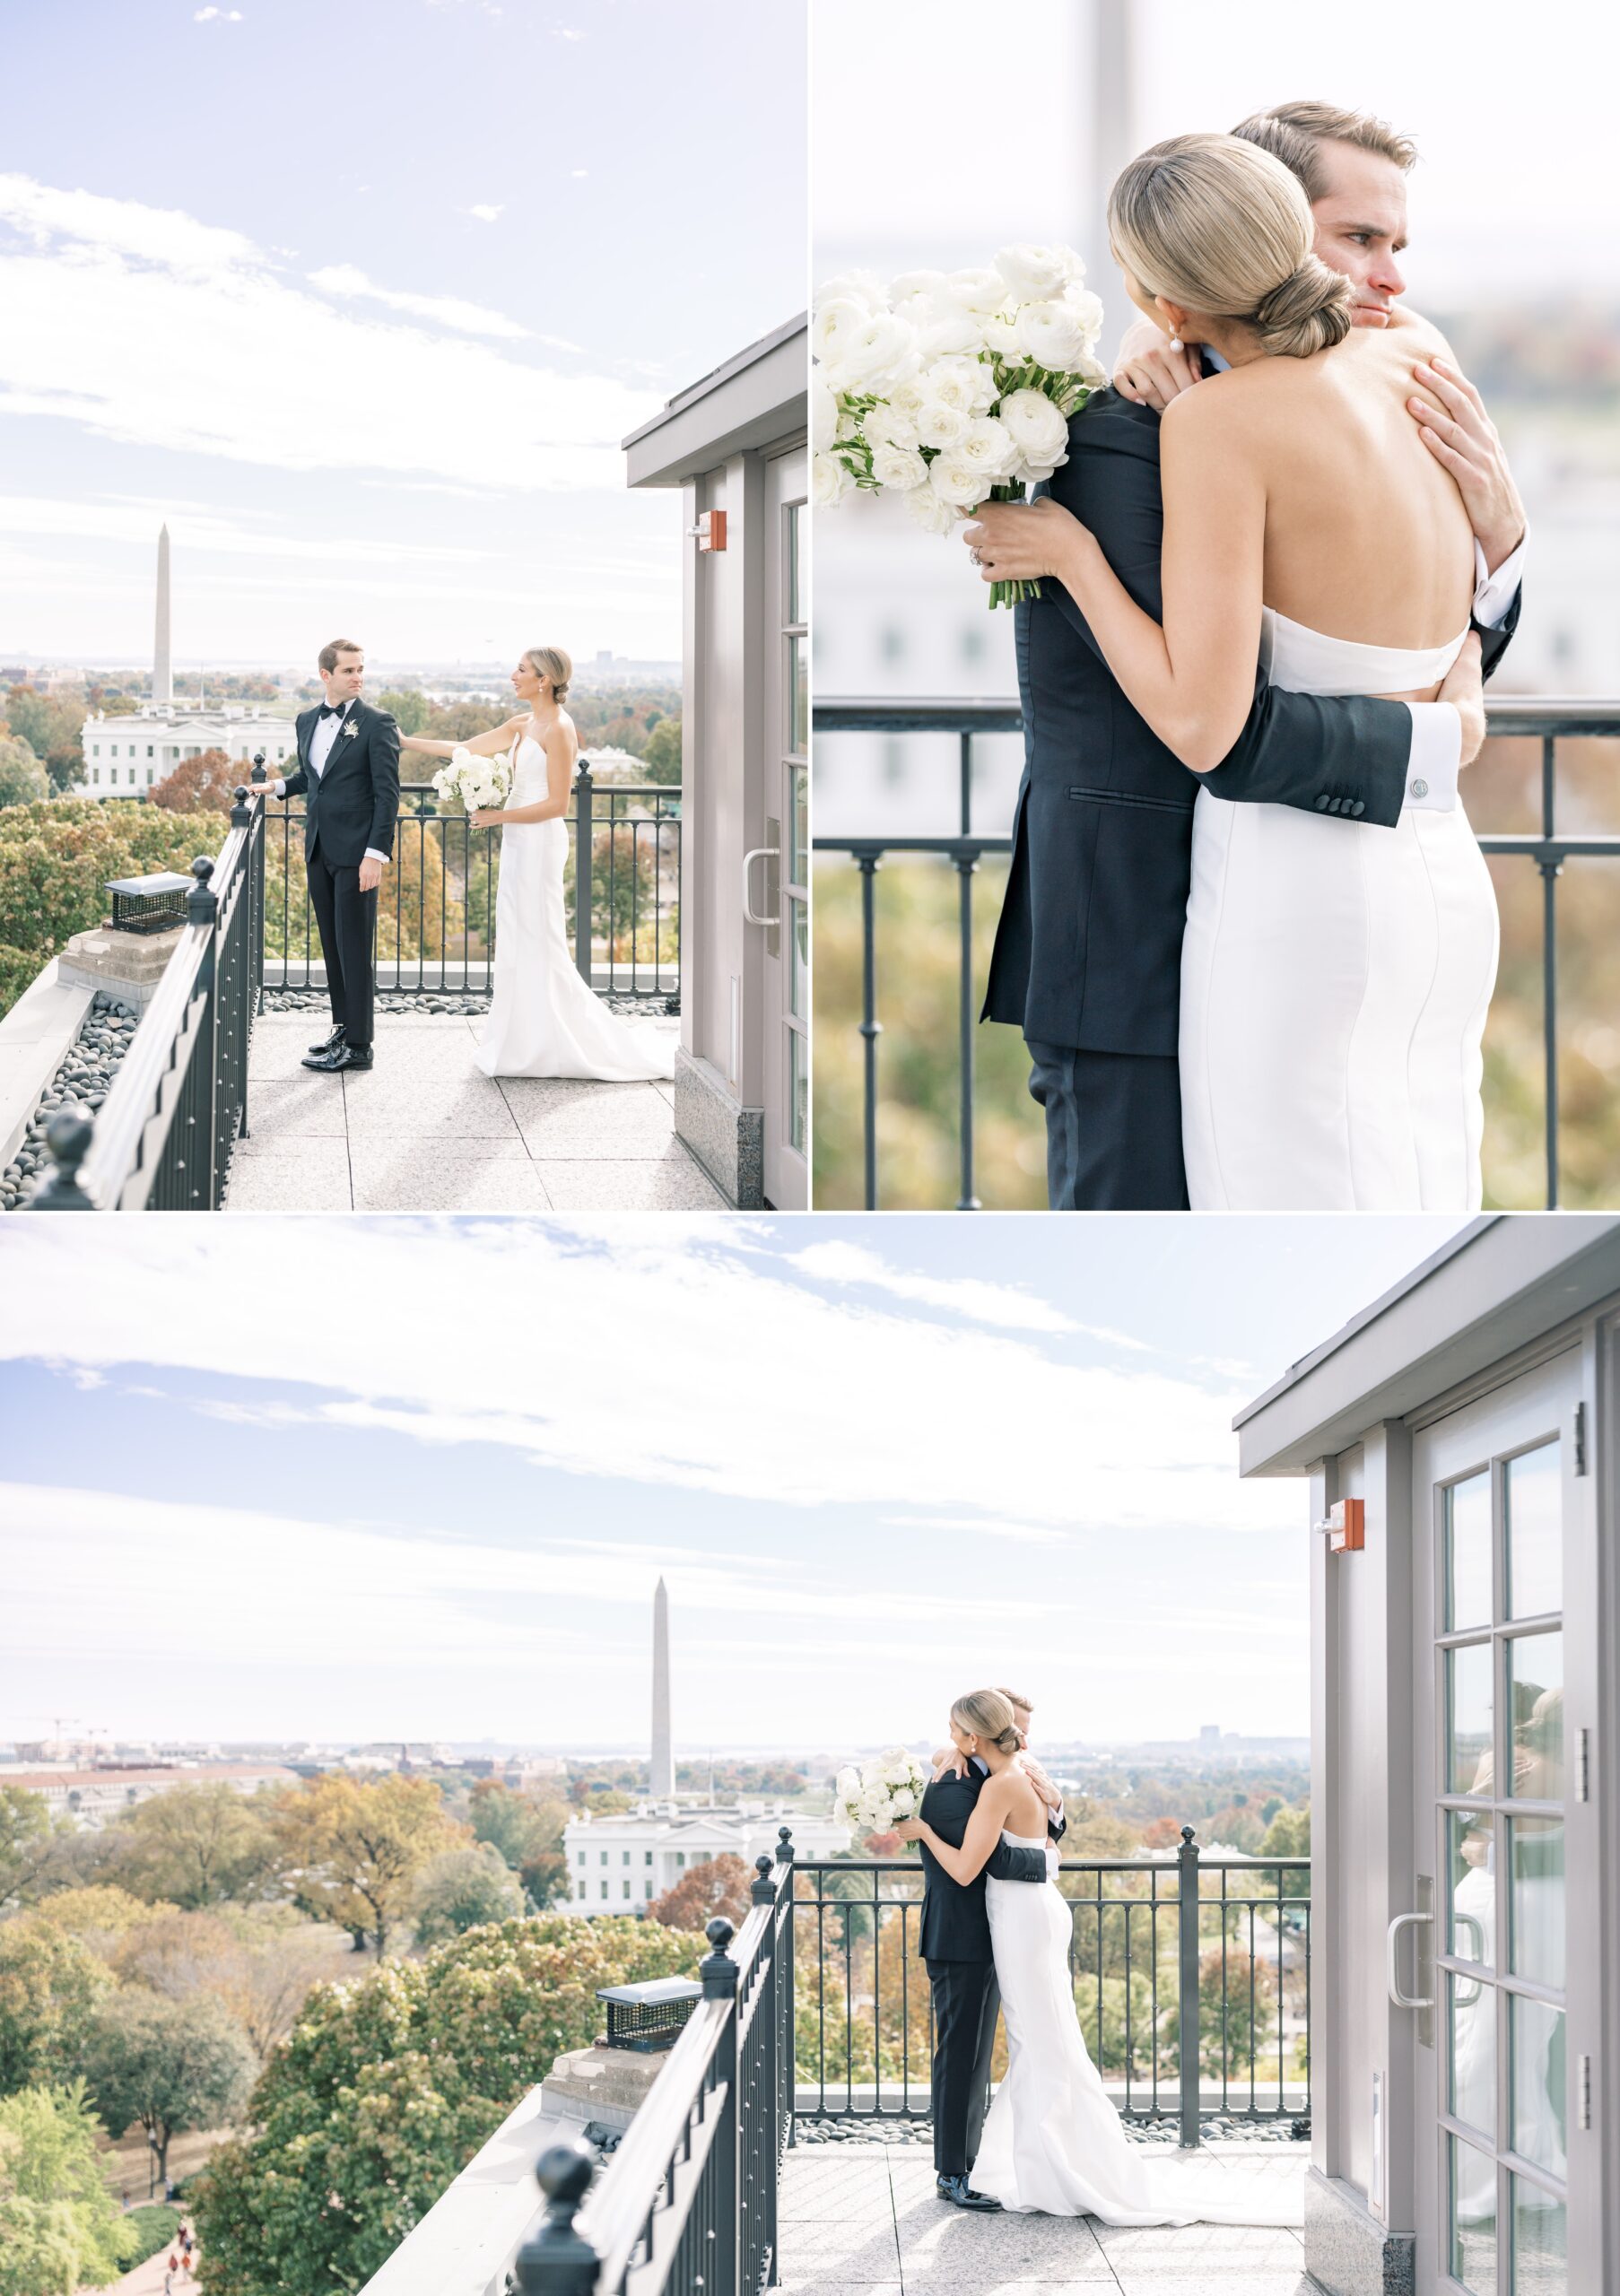 A chic black tie wedding at the elegant Hay Adams hotel in Washington, DC.